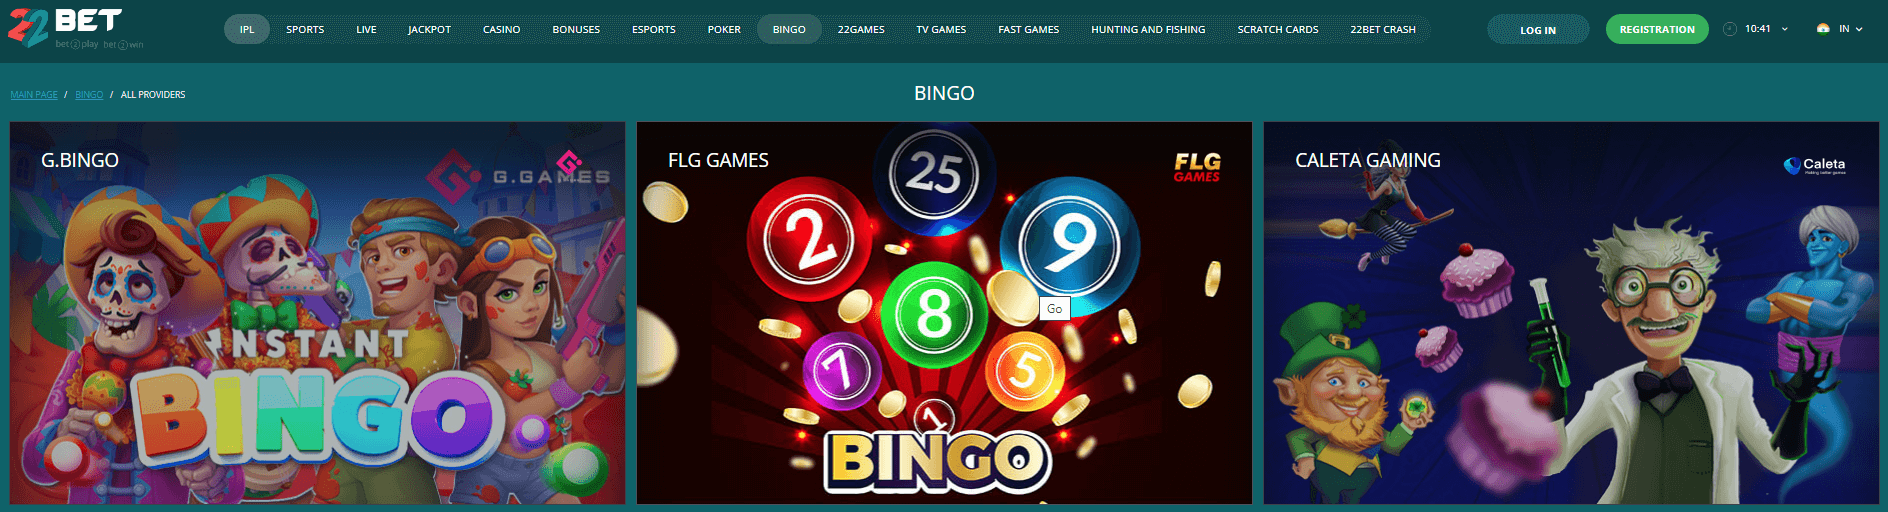 22Bet Bingo Games